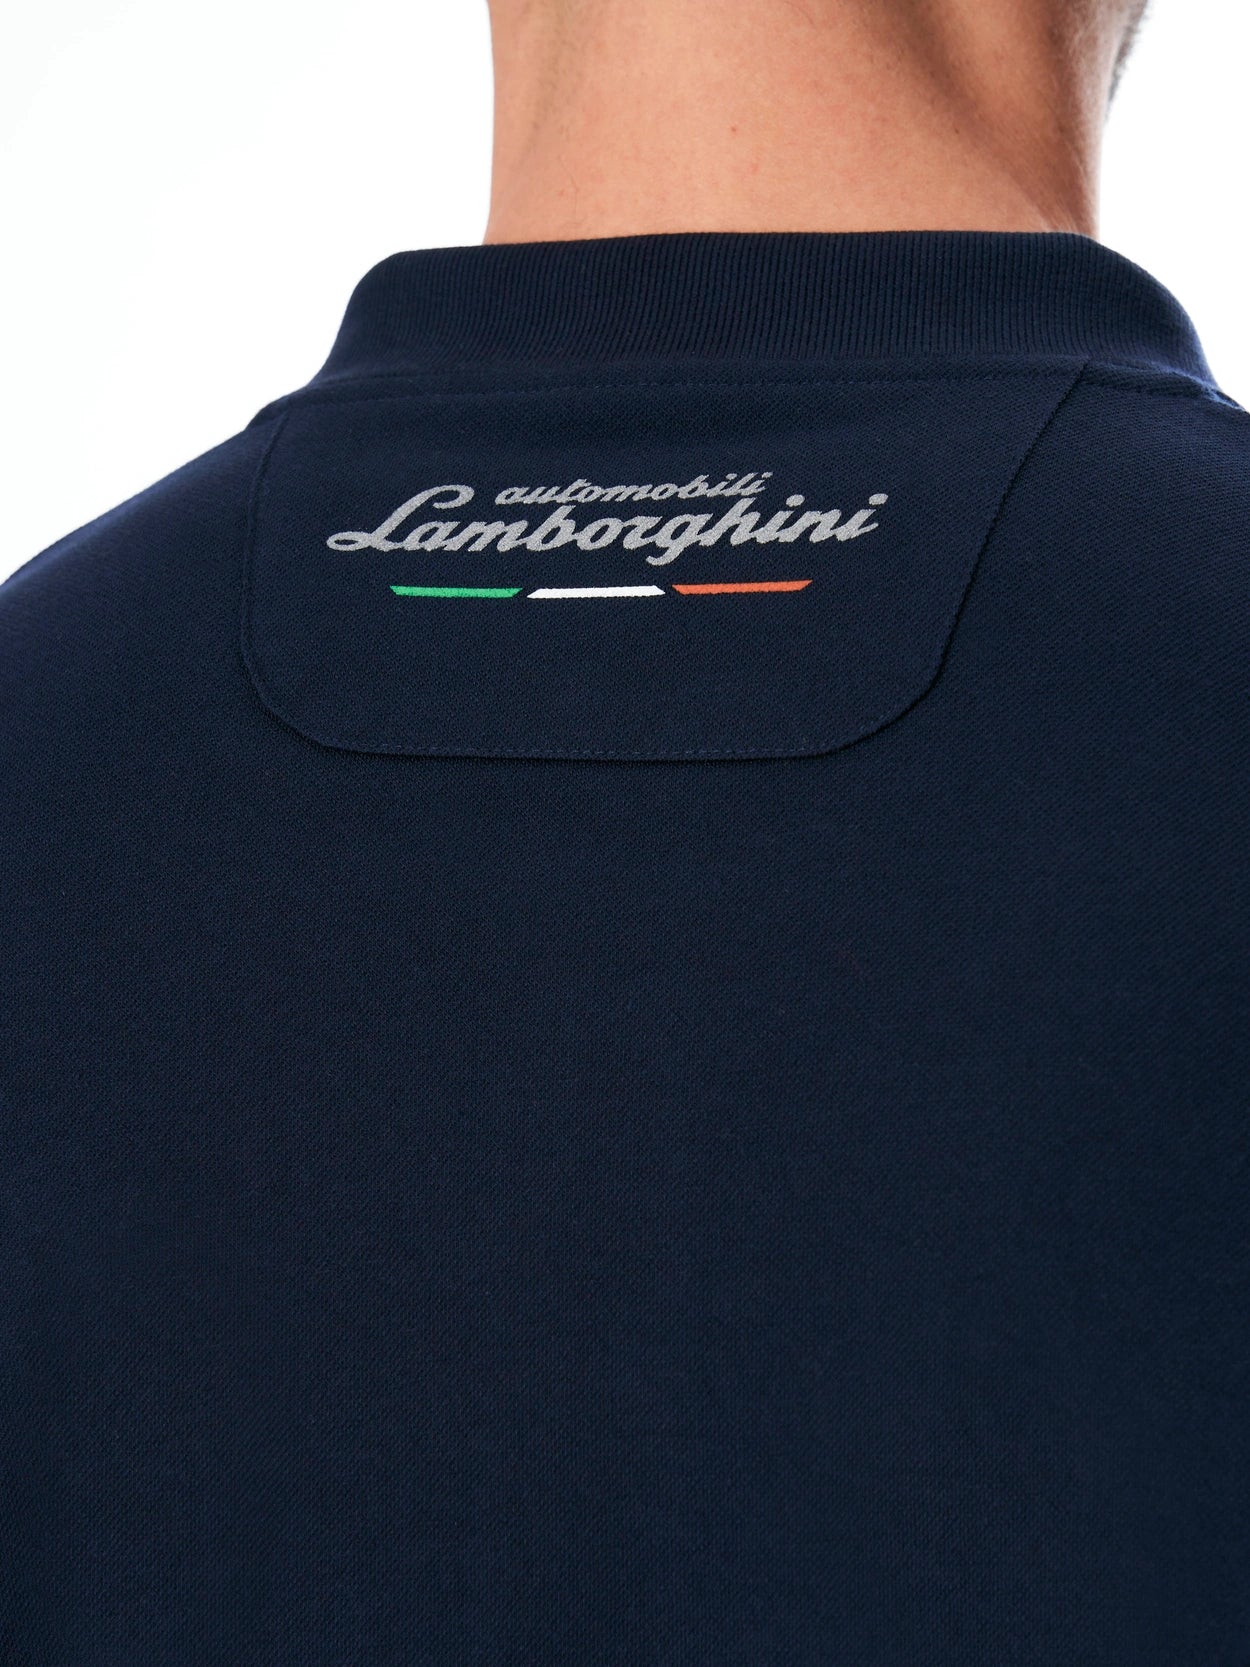 Automobili Lamborghini Men's 60th Anniversary Polo -  Navy Blue